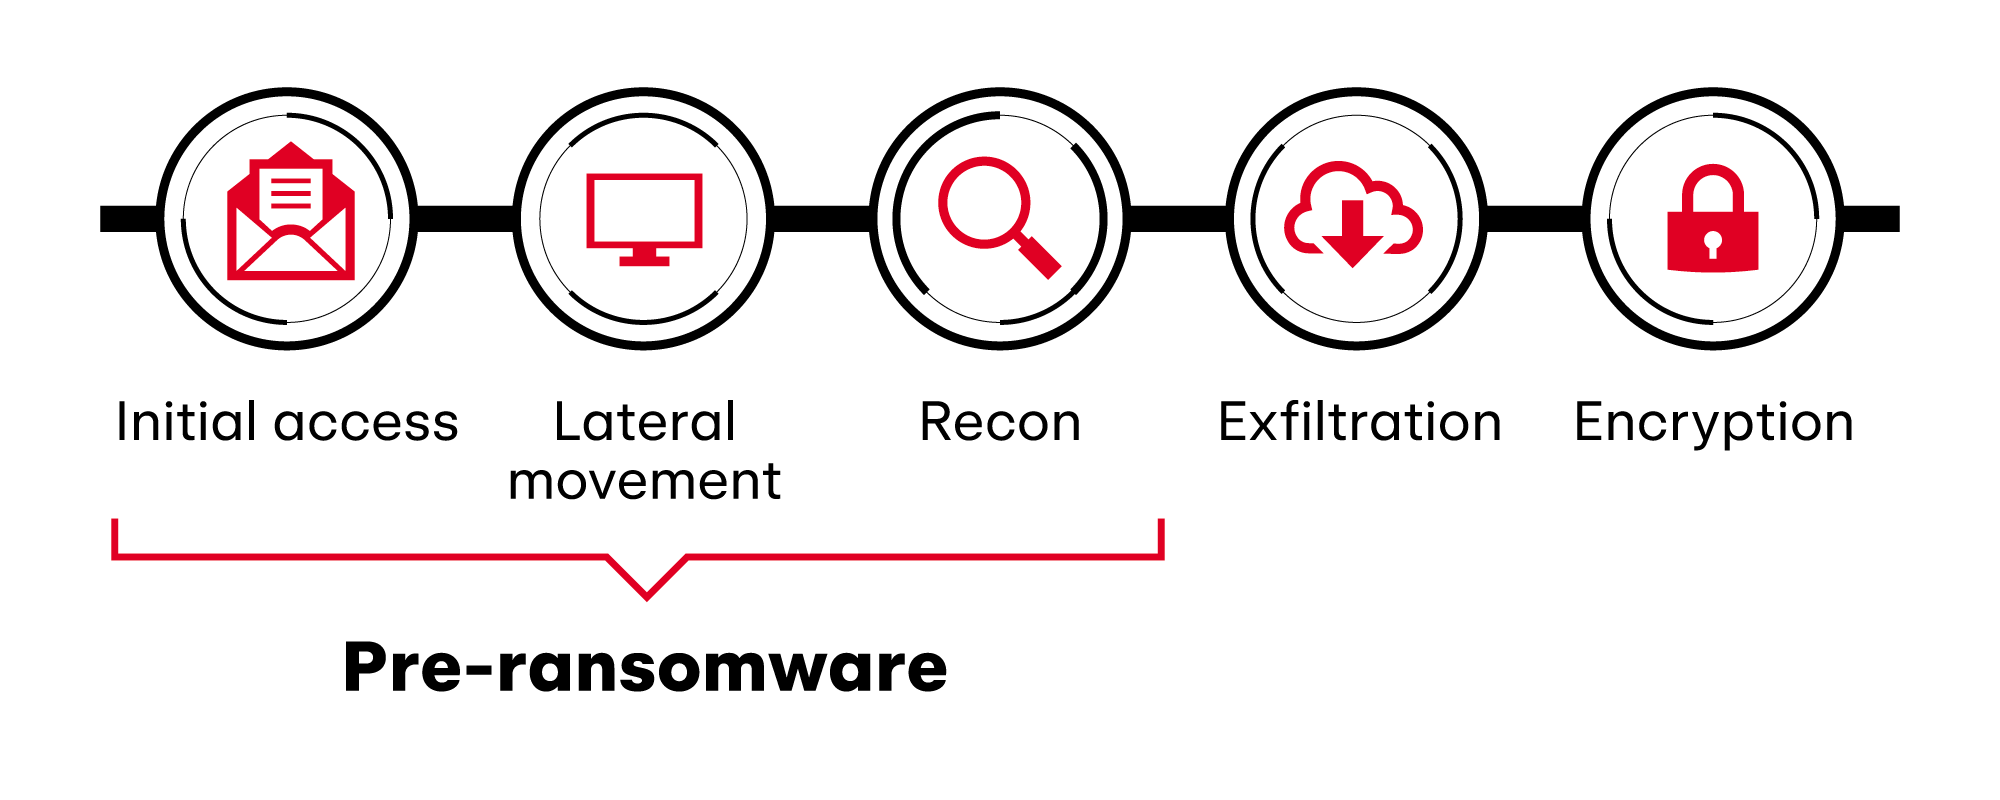 Ransomware intrusion chain